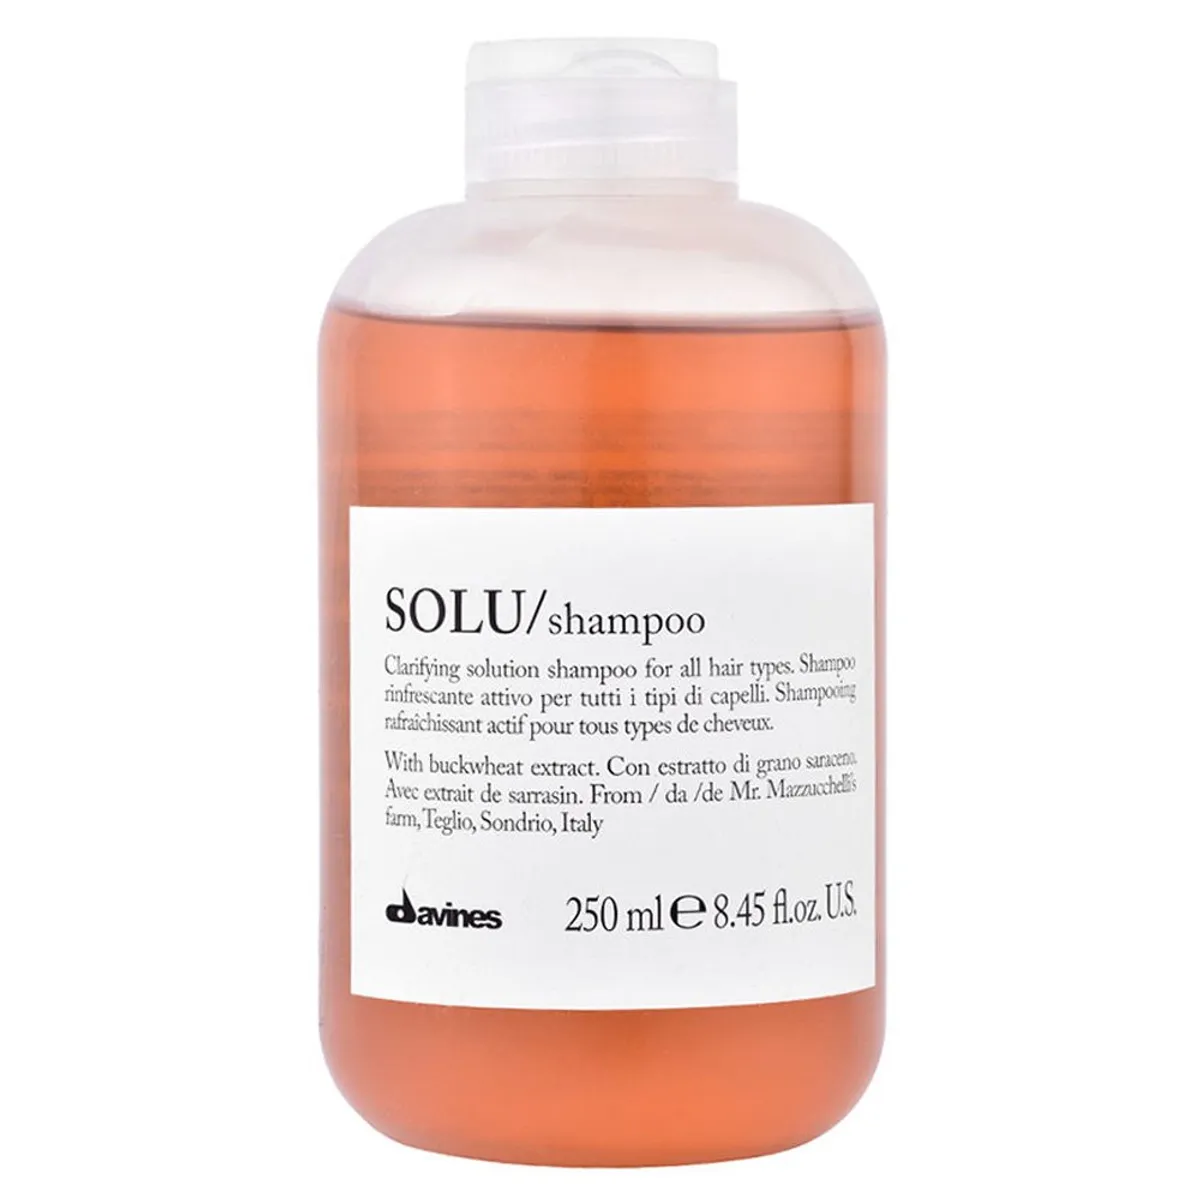 Davines SOLU Shampoo er en dyptrensende sjampo som gir håret en frisk og ren følelse. Den er ideell for å fjerne produktrester og overskudd av olje fra hodebunnen og håret.

SOLU Shampoo er beriket med ekstrakt av sitron, som er kjent for sine rensende og oppfriskende egenskaper. Sjampoen inneholder også ekstrakt av eukalyptus, som bidrar til å stimulere hodebunnen og gi en forfriskende følelse.

Denne sjampoen er egnet for alle hårtyper, og kan brukes daglig for å opprettholde en sunn hodebunn og et rent og friskt hår. Den er også fri for parabener og sulfater, og er derfor skånsom mot både hår og hodebunn.